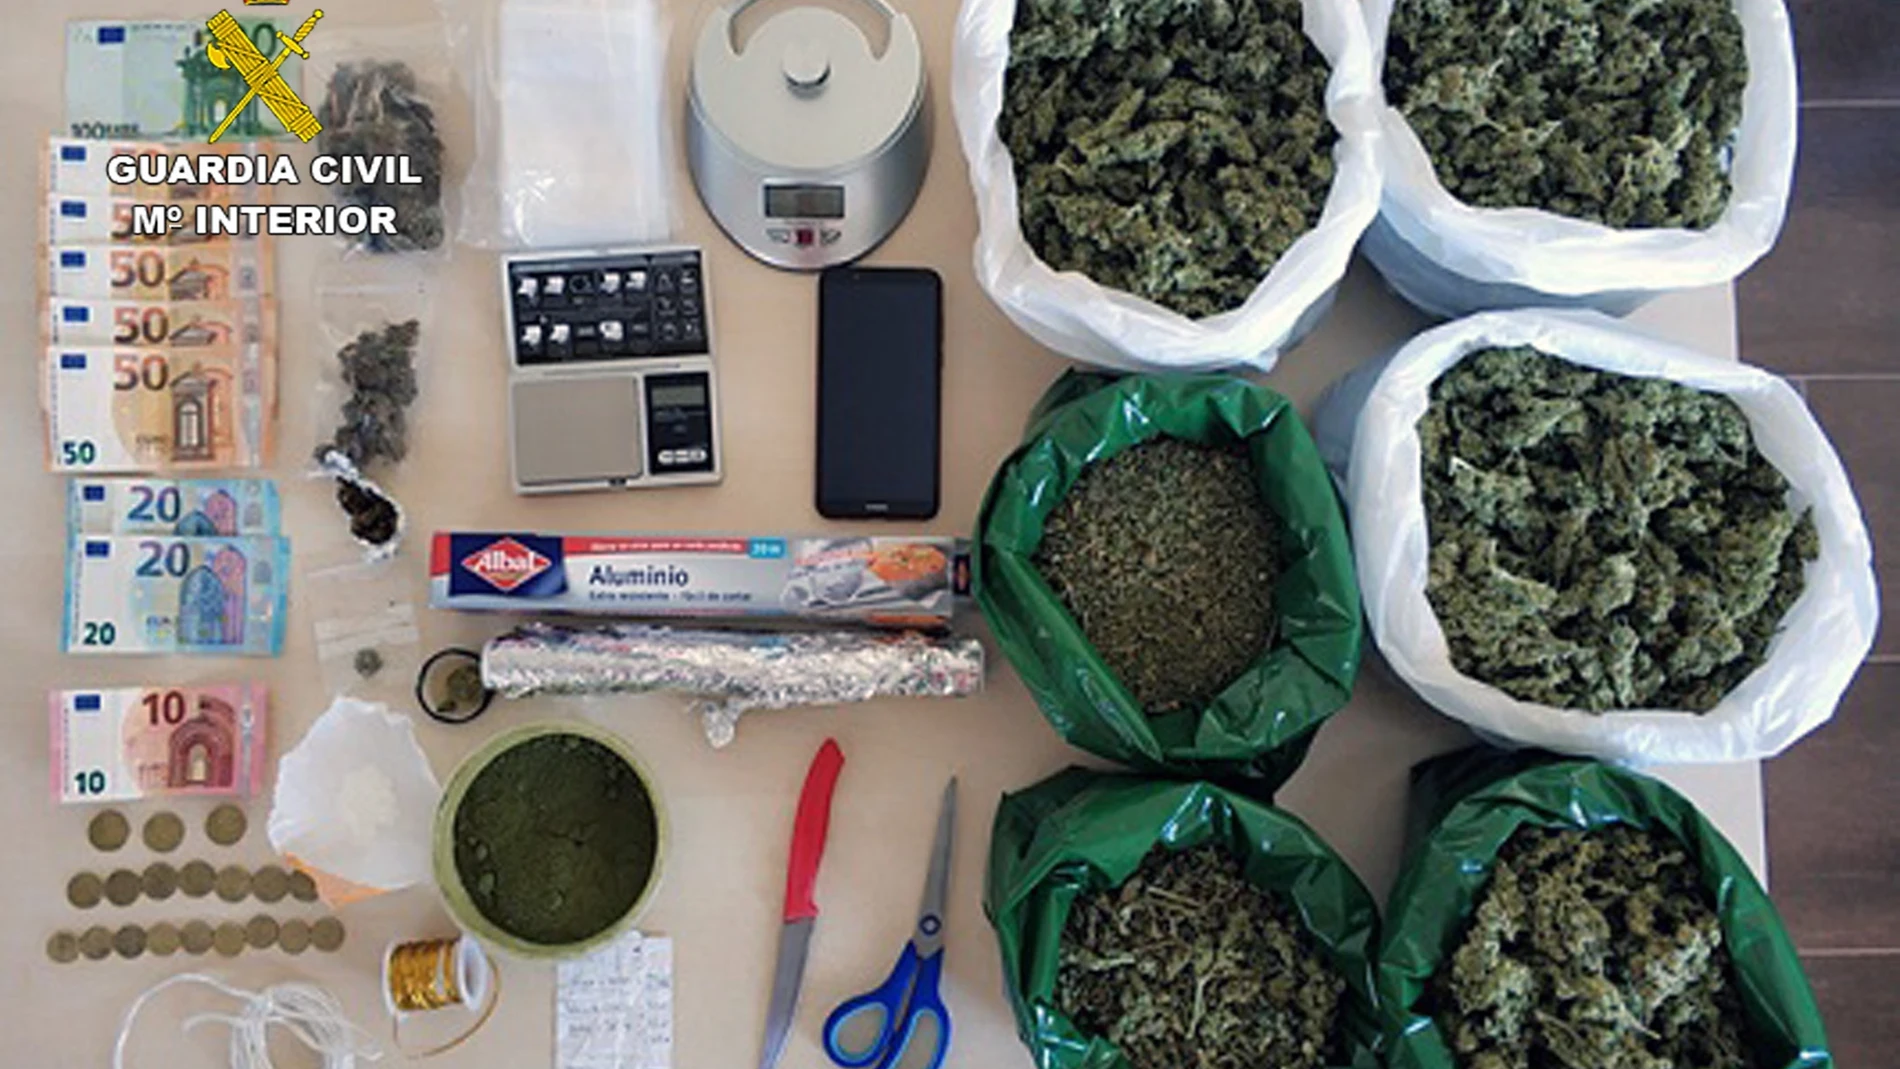 Sucesos.- La Guardia Civil desmantela un punto de venta de droga al menudeo en un domicilio de Totana